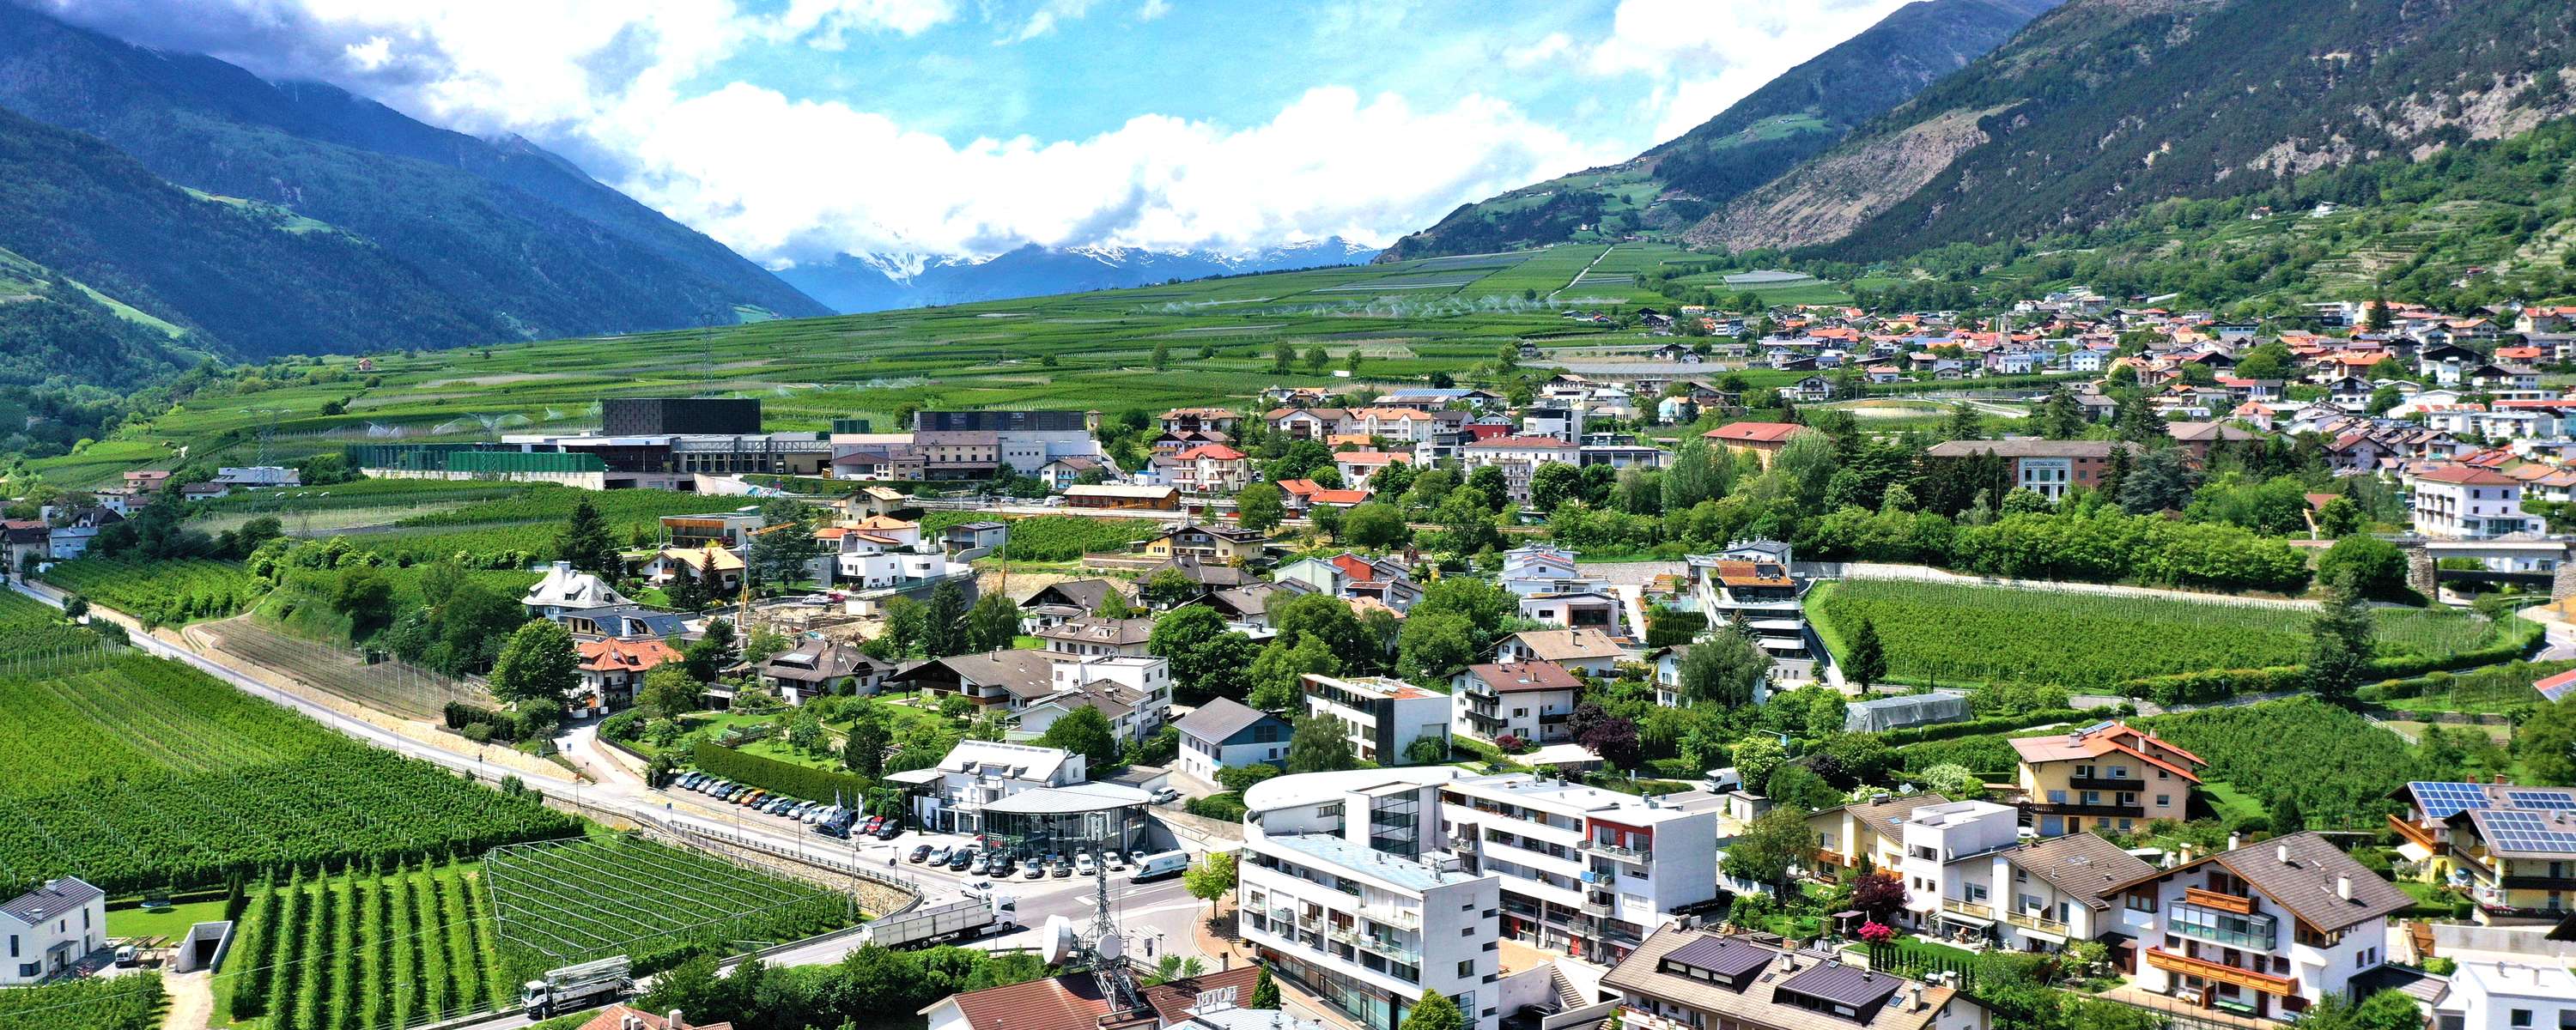 Immobilien Wellenzohn Immobilien Grundstucke In Sudtirol